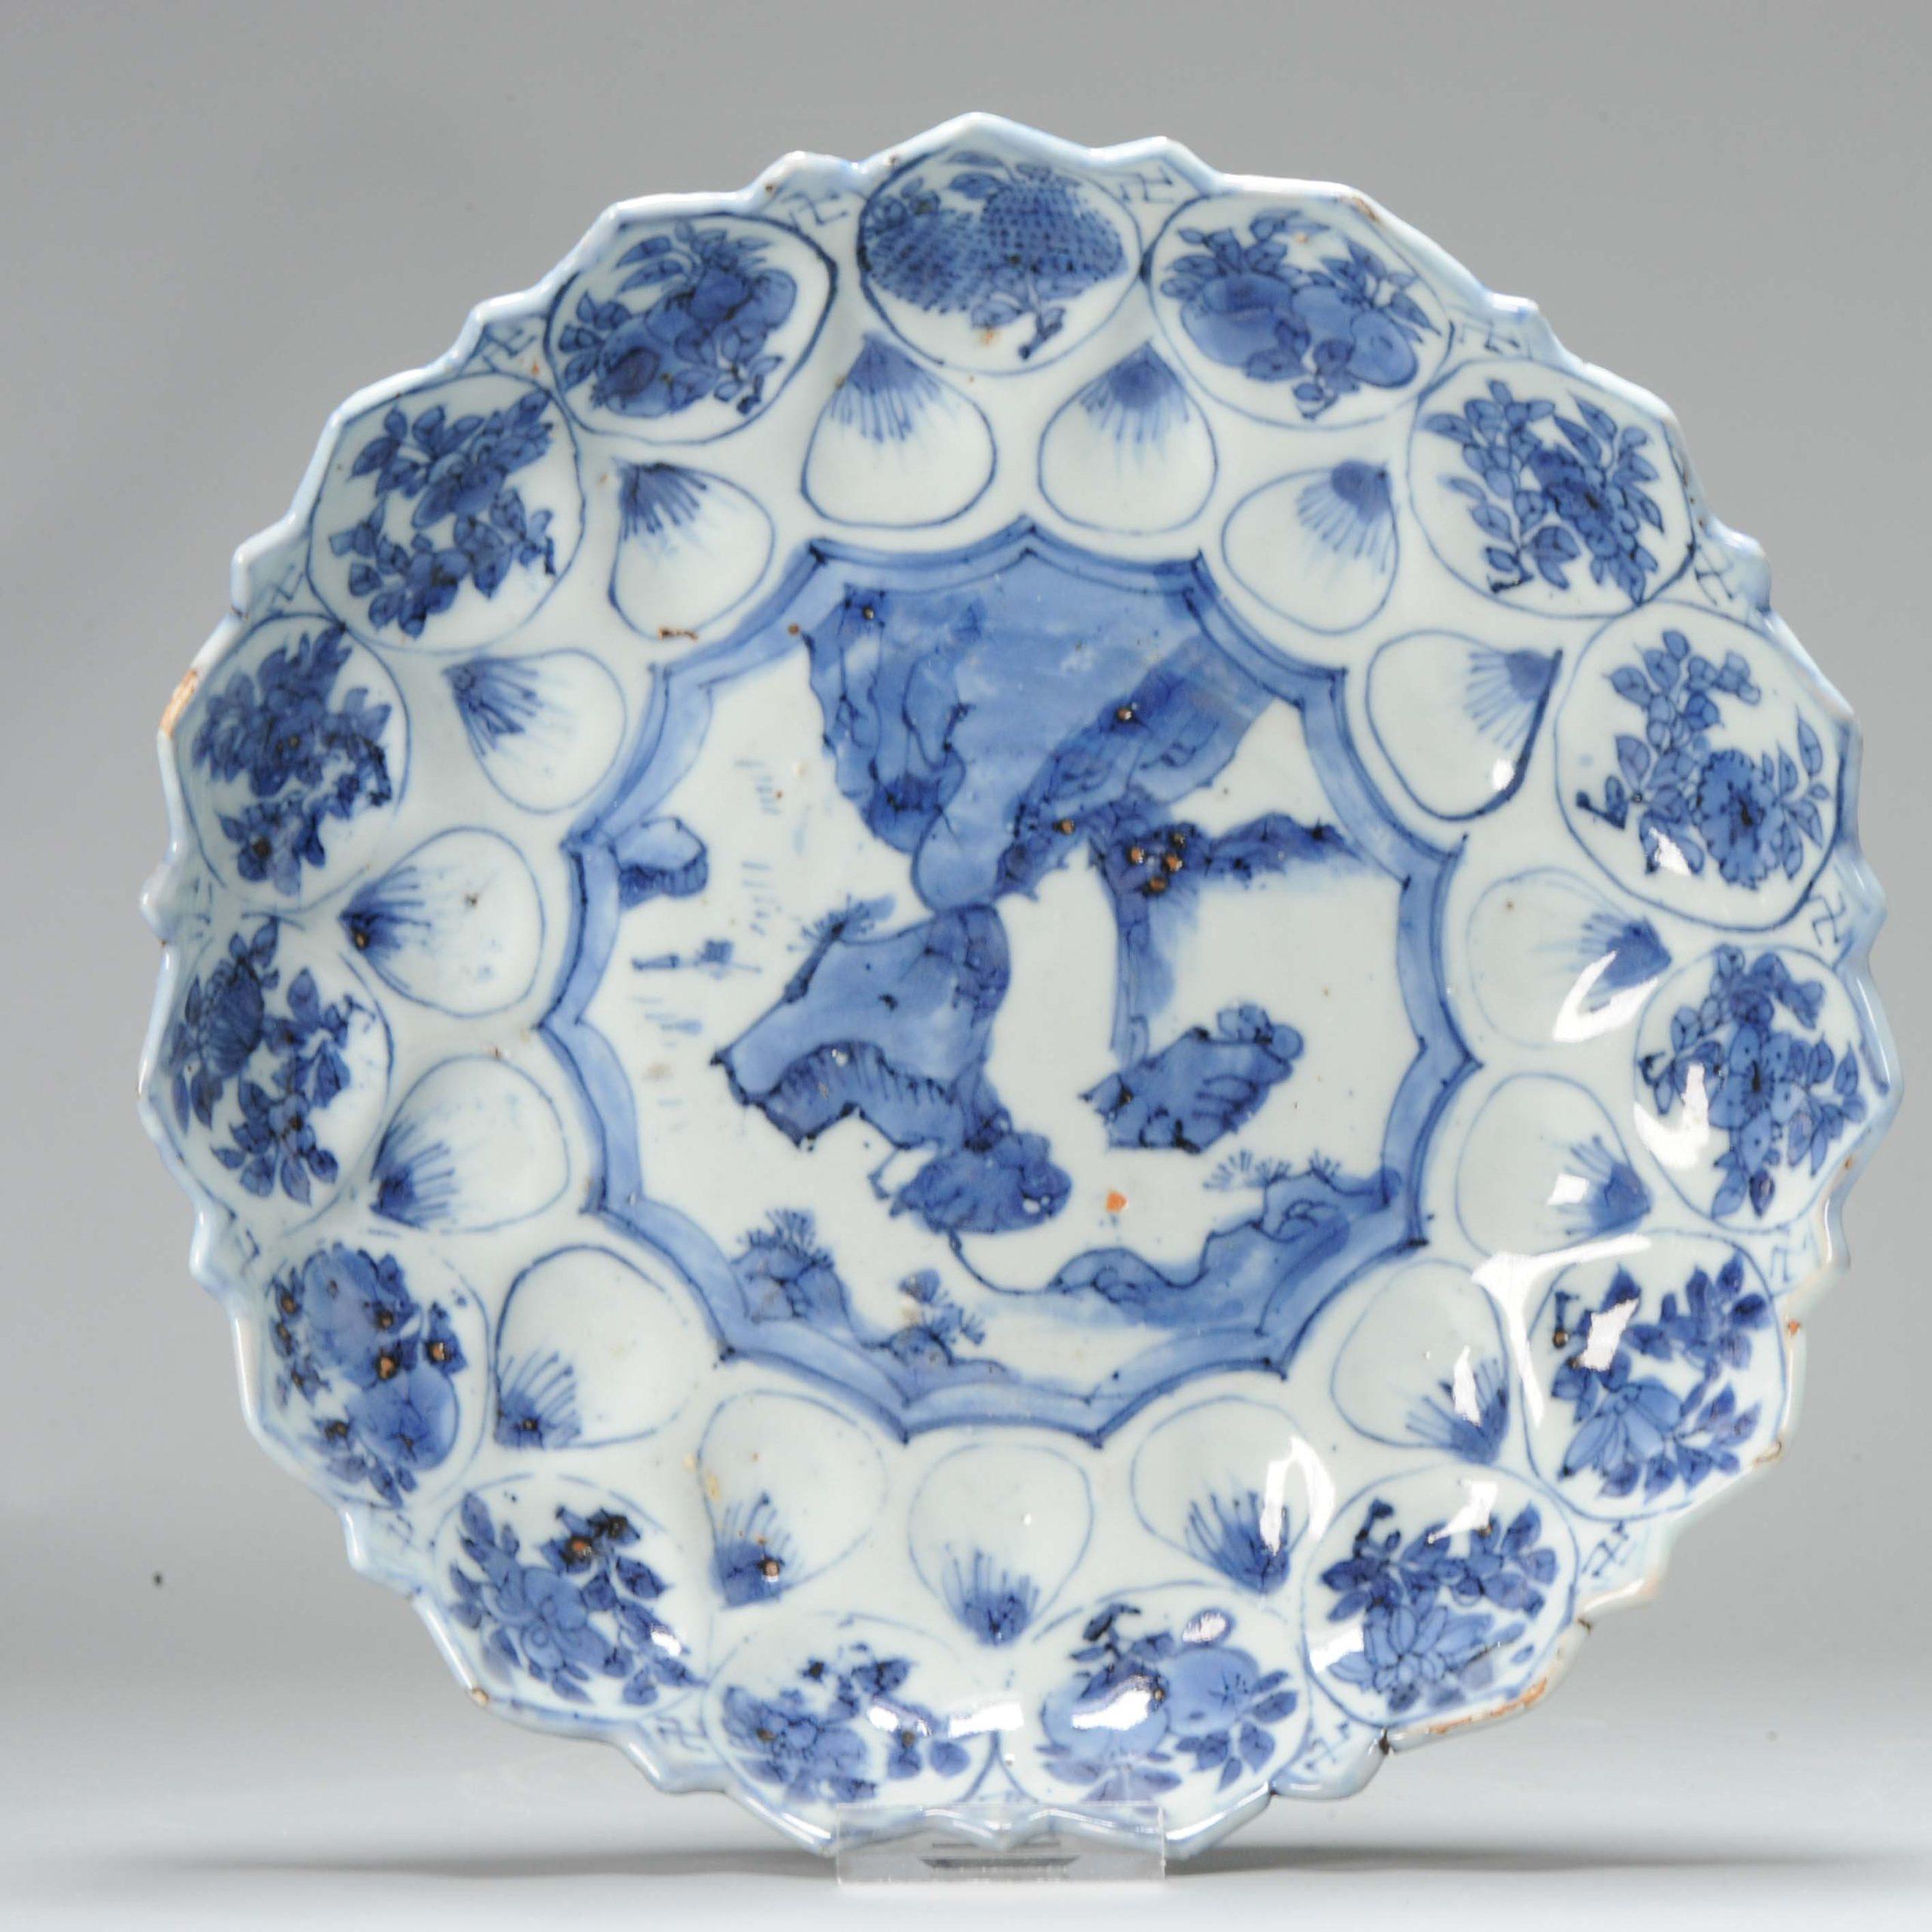 Magnifique plat en bleu et blanc. Il s'agit d'un plat fabriqué à Jingdezhen pour le marché japonais. Kosometsuke.

Le bord du plat est en forme de fleur, le disque est également en forme de fleur. Scène centrale d'un paysage rocheux, bordée de